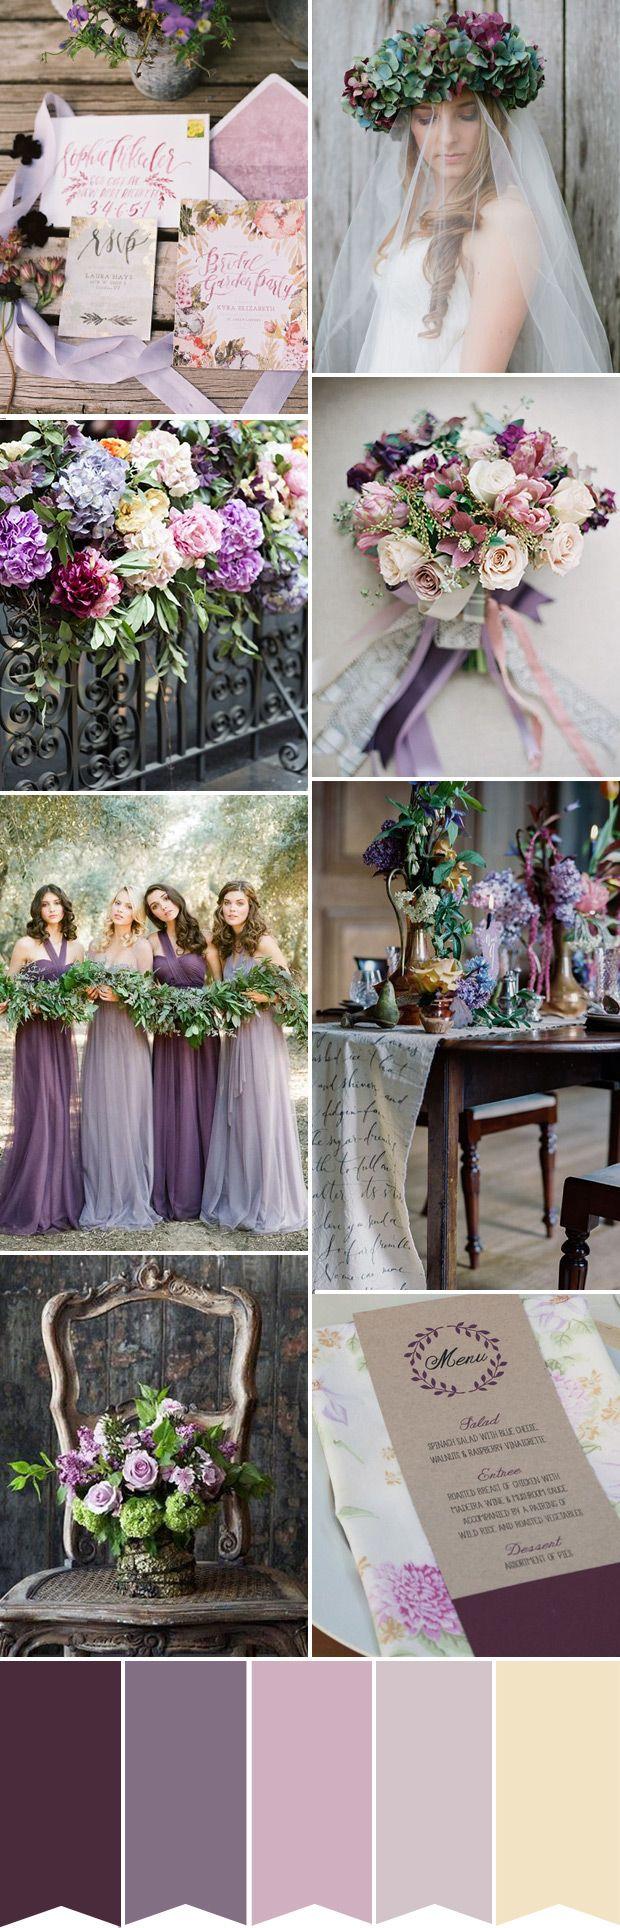 زفاف - The Perfect Look For A Purple Wedding In 2015